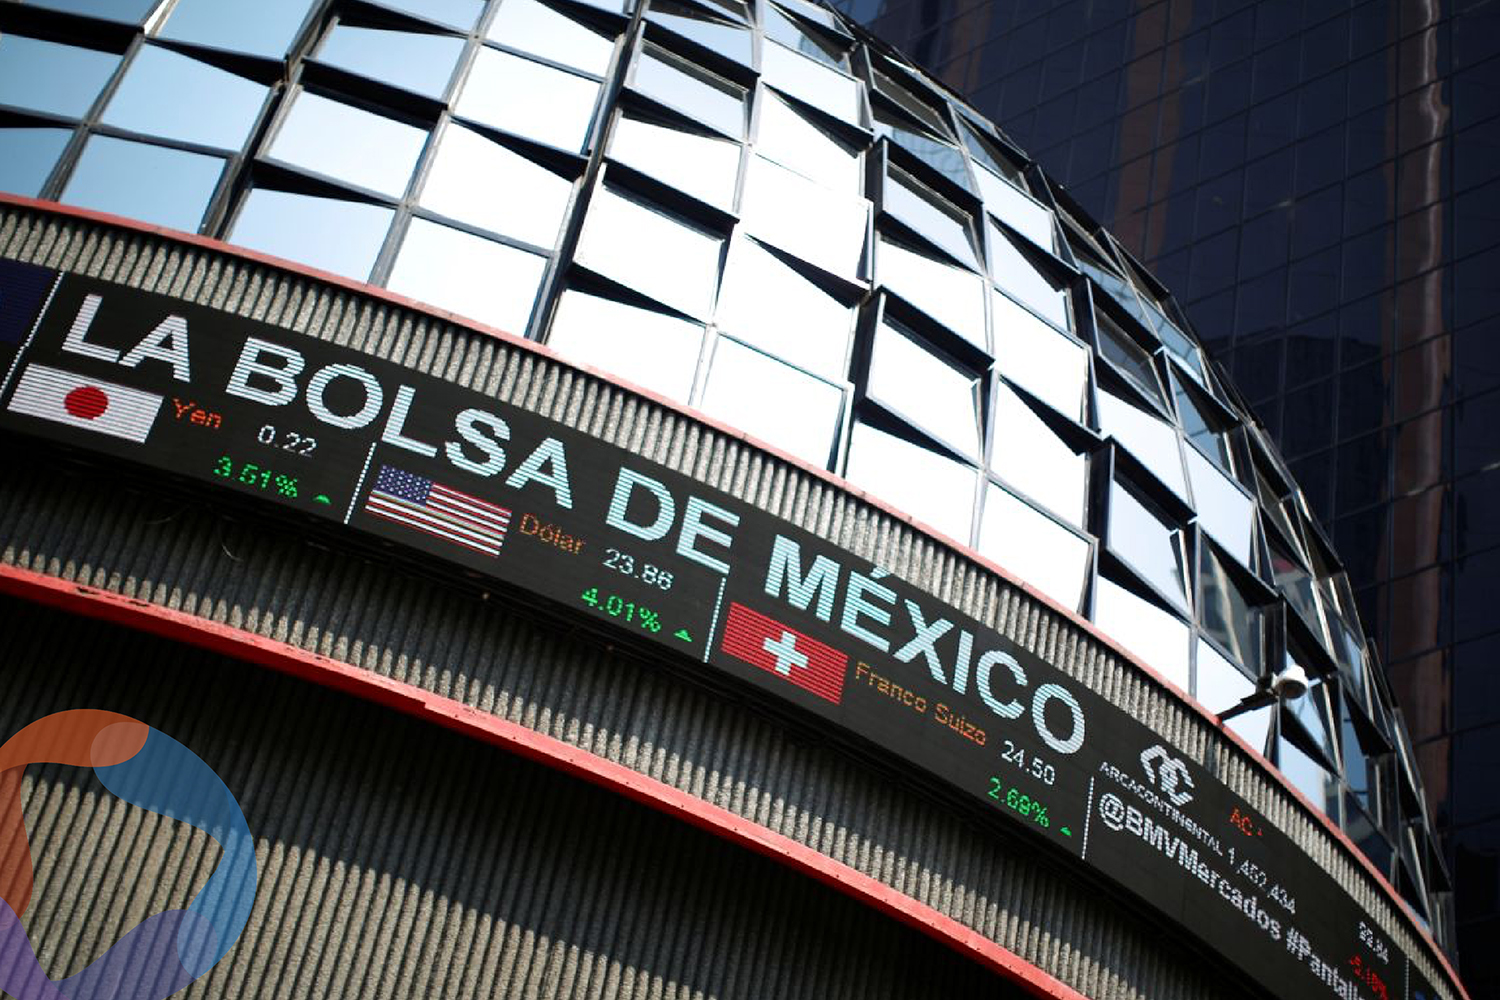 La falta de cultura financiera limita el crecimiento de la Bolsa de valores en México: Expertos